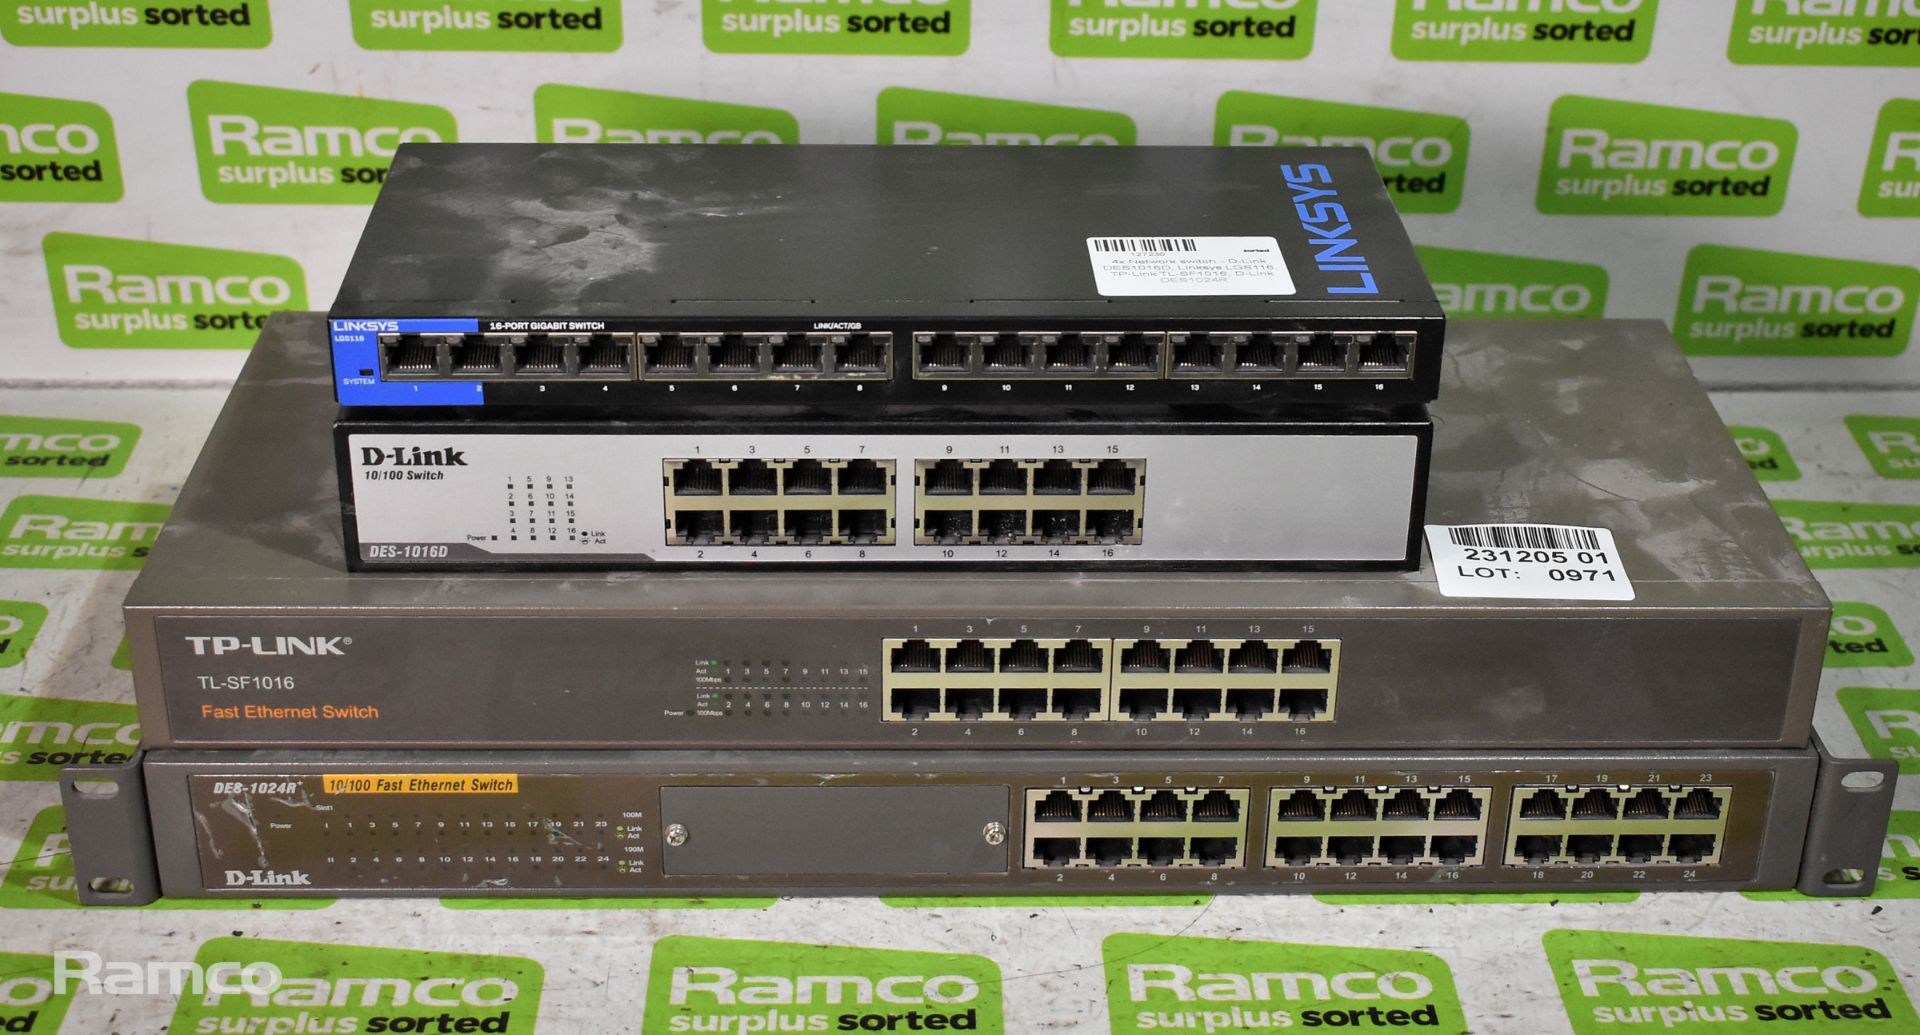 4x Network switches - D-Link DES1016D, Linksys LGS116, TP-Link TL-SF1016, D-Link DES1024R